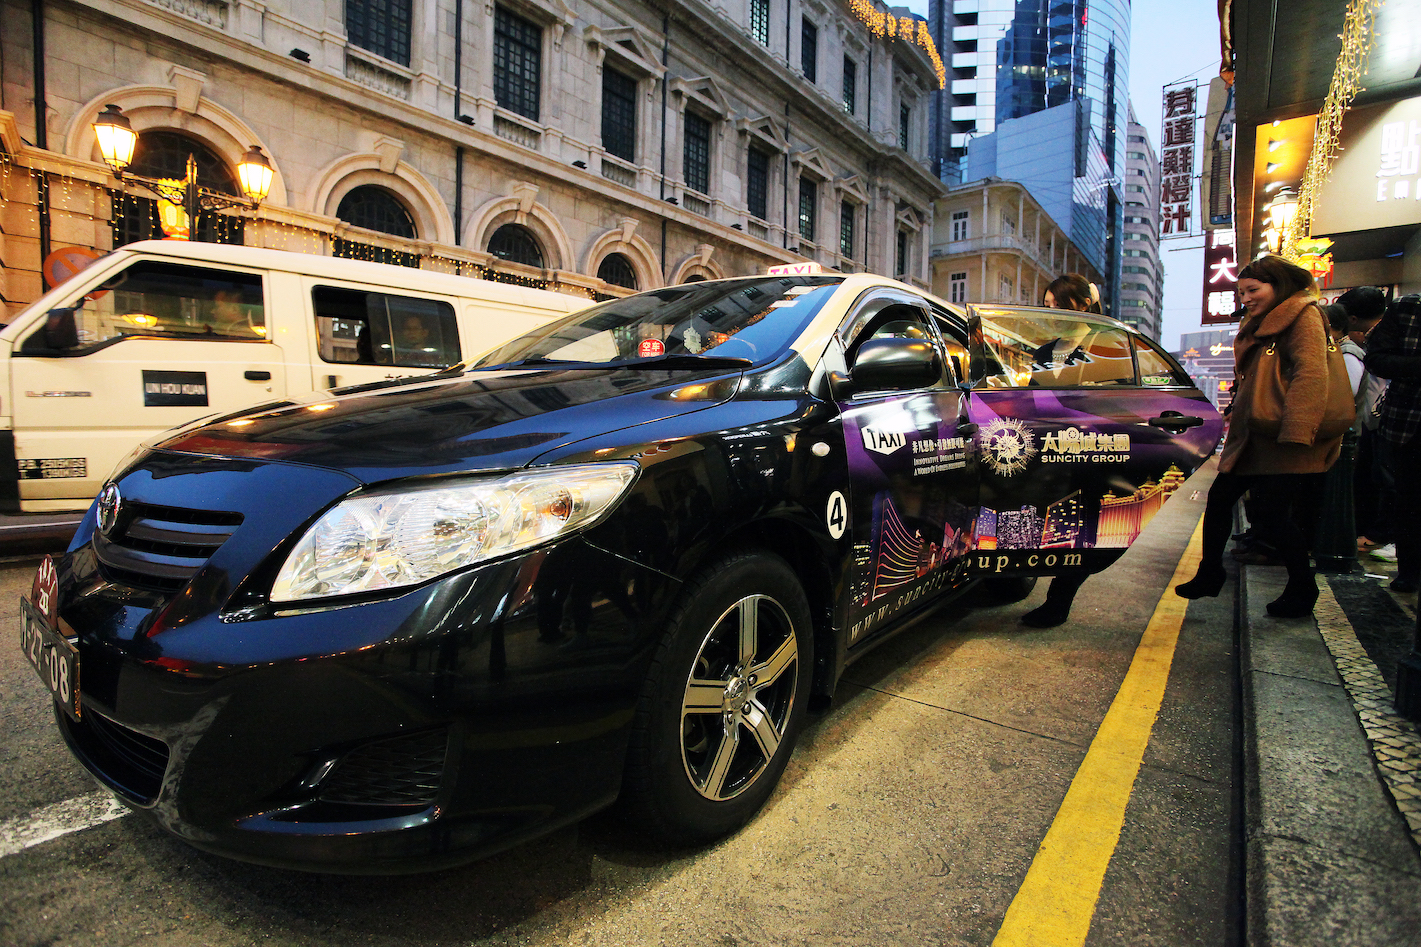 Táxis | Condutores querem carros próprios para códigos vermelhos